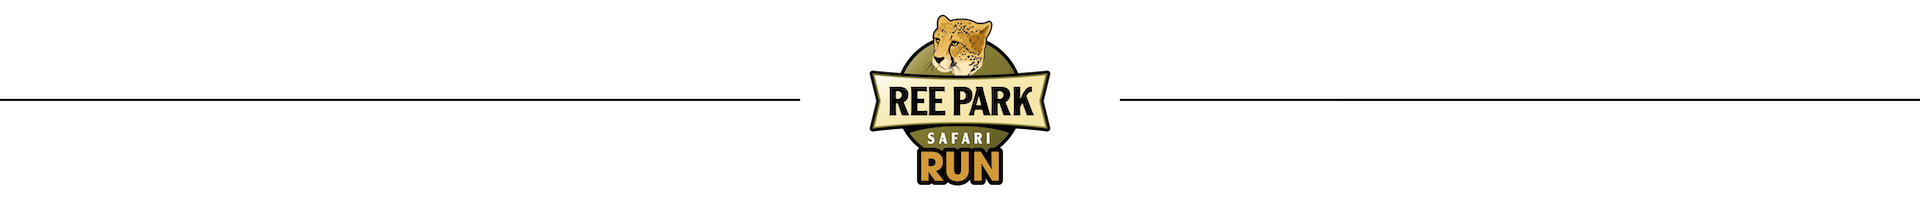 safari park run